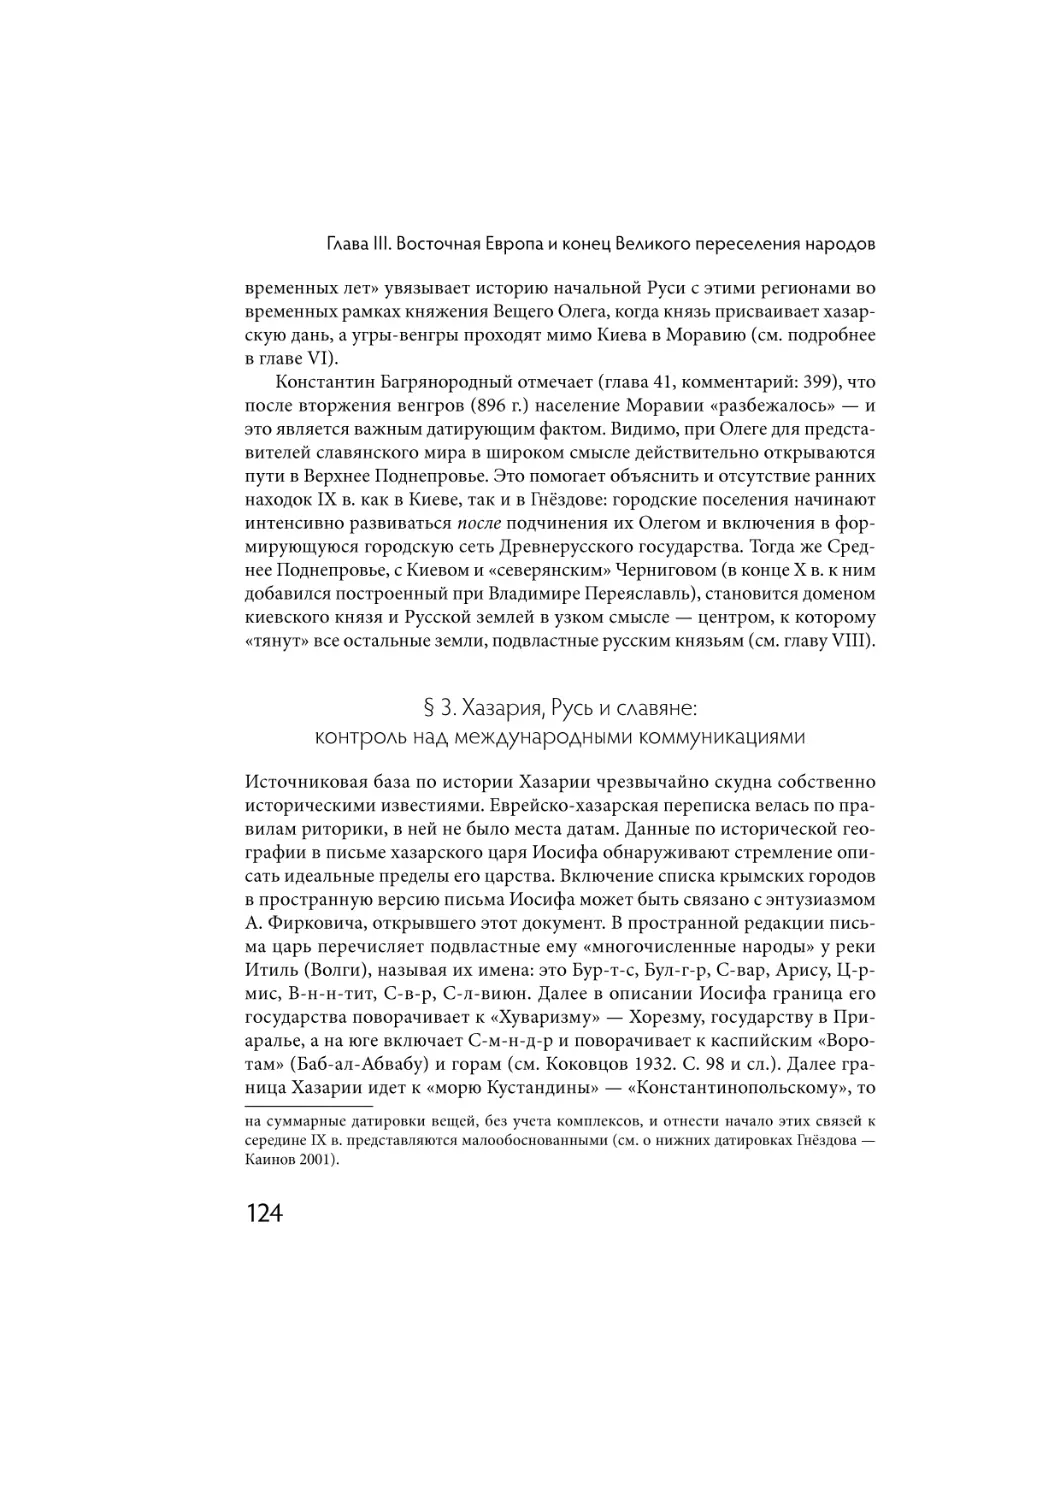 § 3. Хазария, Русь и славяне: контроль над международными коммуникациями